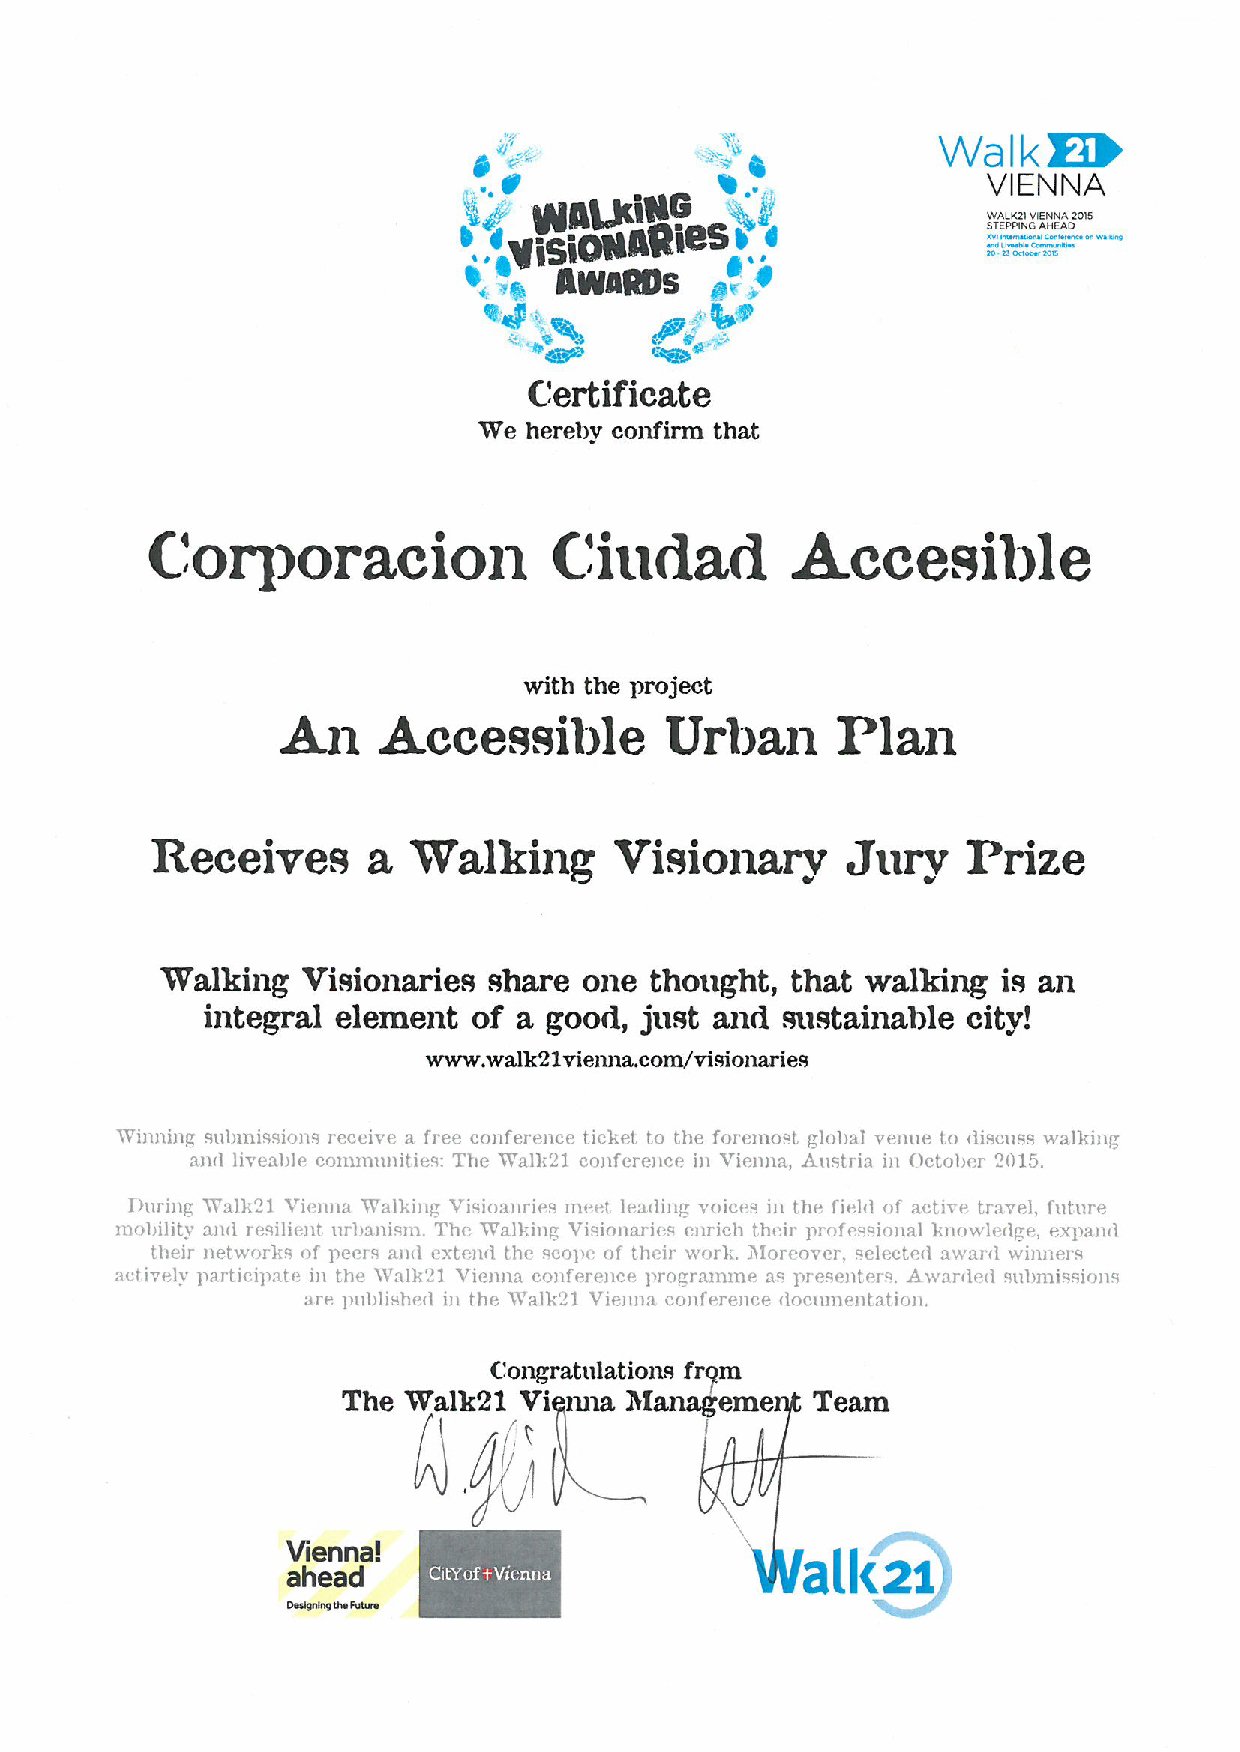 Ciudad Accesible recibe premio en Concurso Internacional | Walk21 Viena